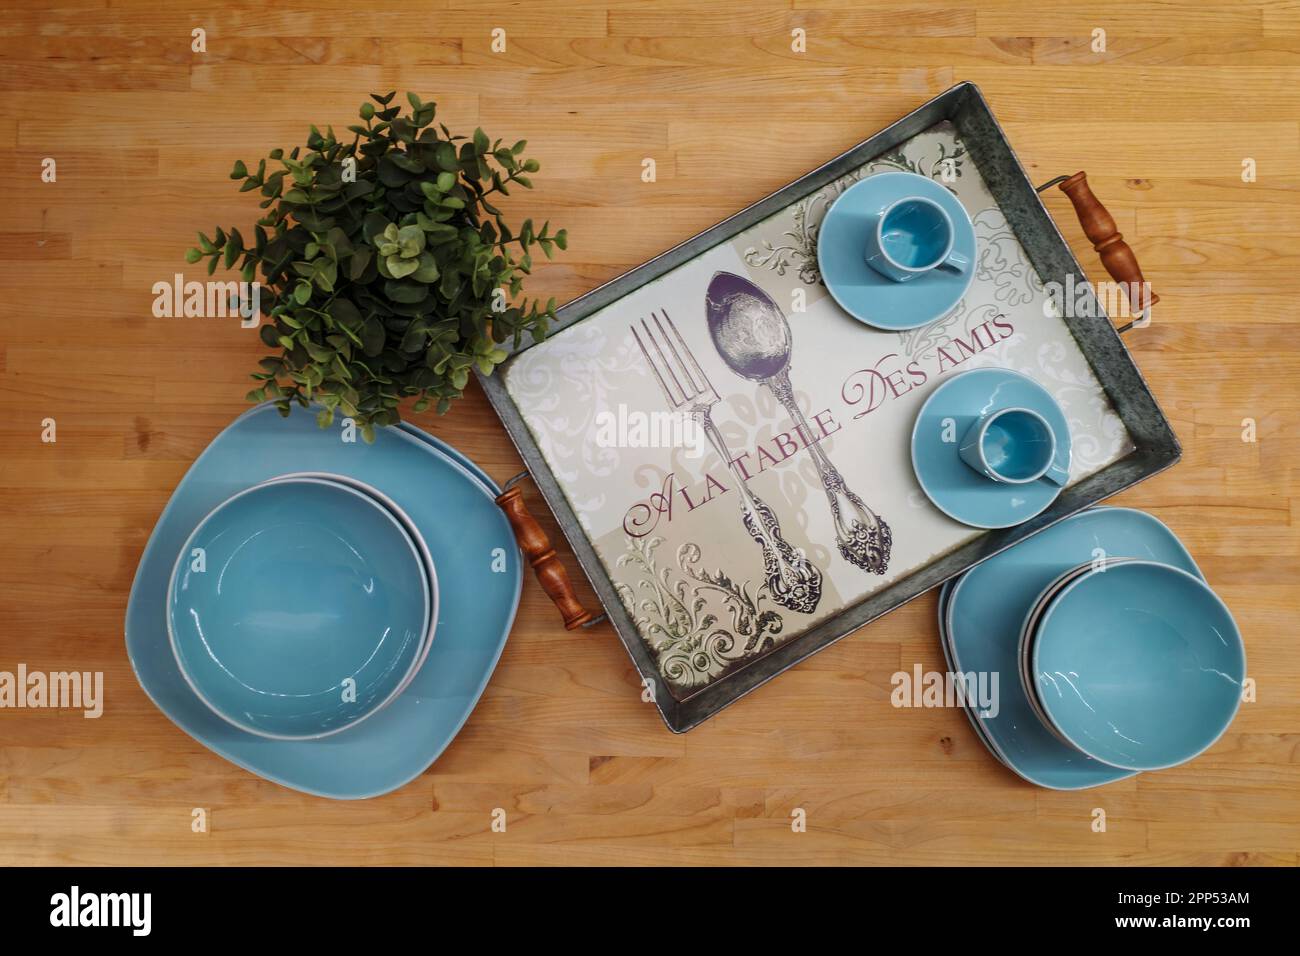 vaisselle bleu turquoise avec une plante verte et un plateau sur une table  en bois. Traduction sur le plateau: À la table avec des amis Photo Stock -  Alamy